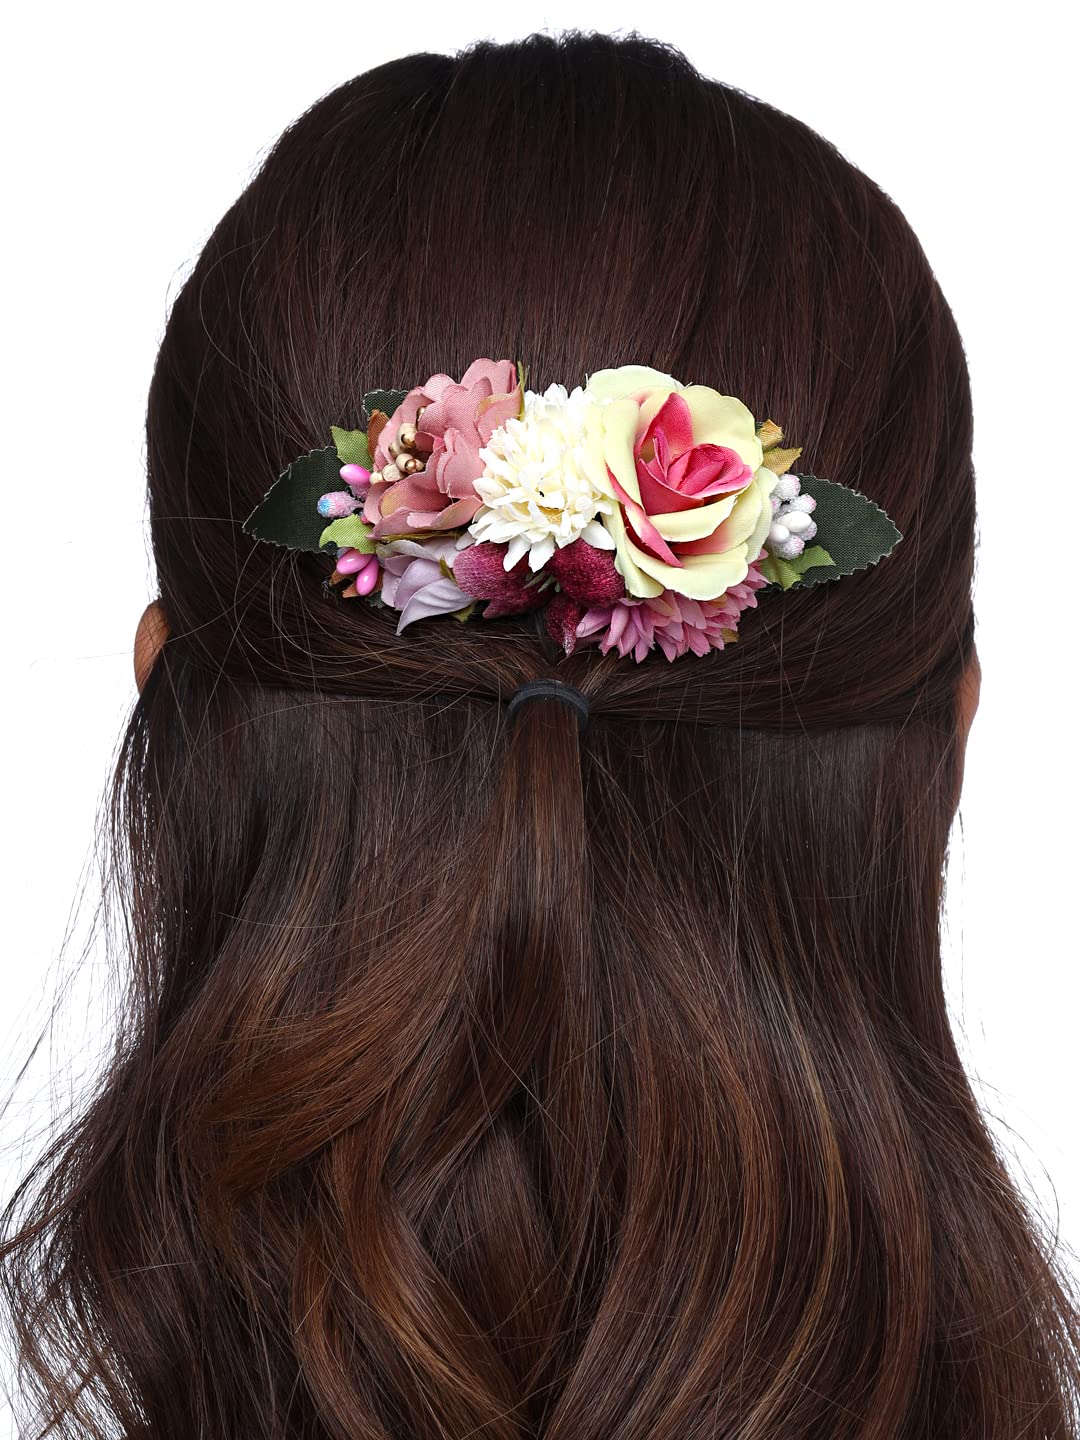 Flower Hair Comb Fashion Rhinestone Hair Clip Comb For Women  Girls Bridal  Wedding Hair Accessories Hair Clips  Hair Clips  AliExpress